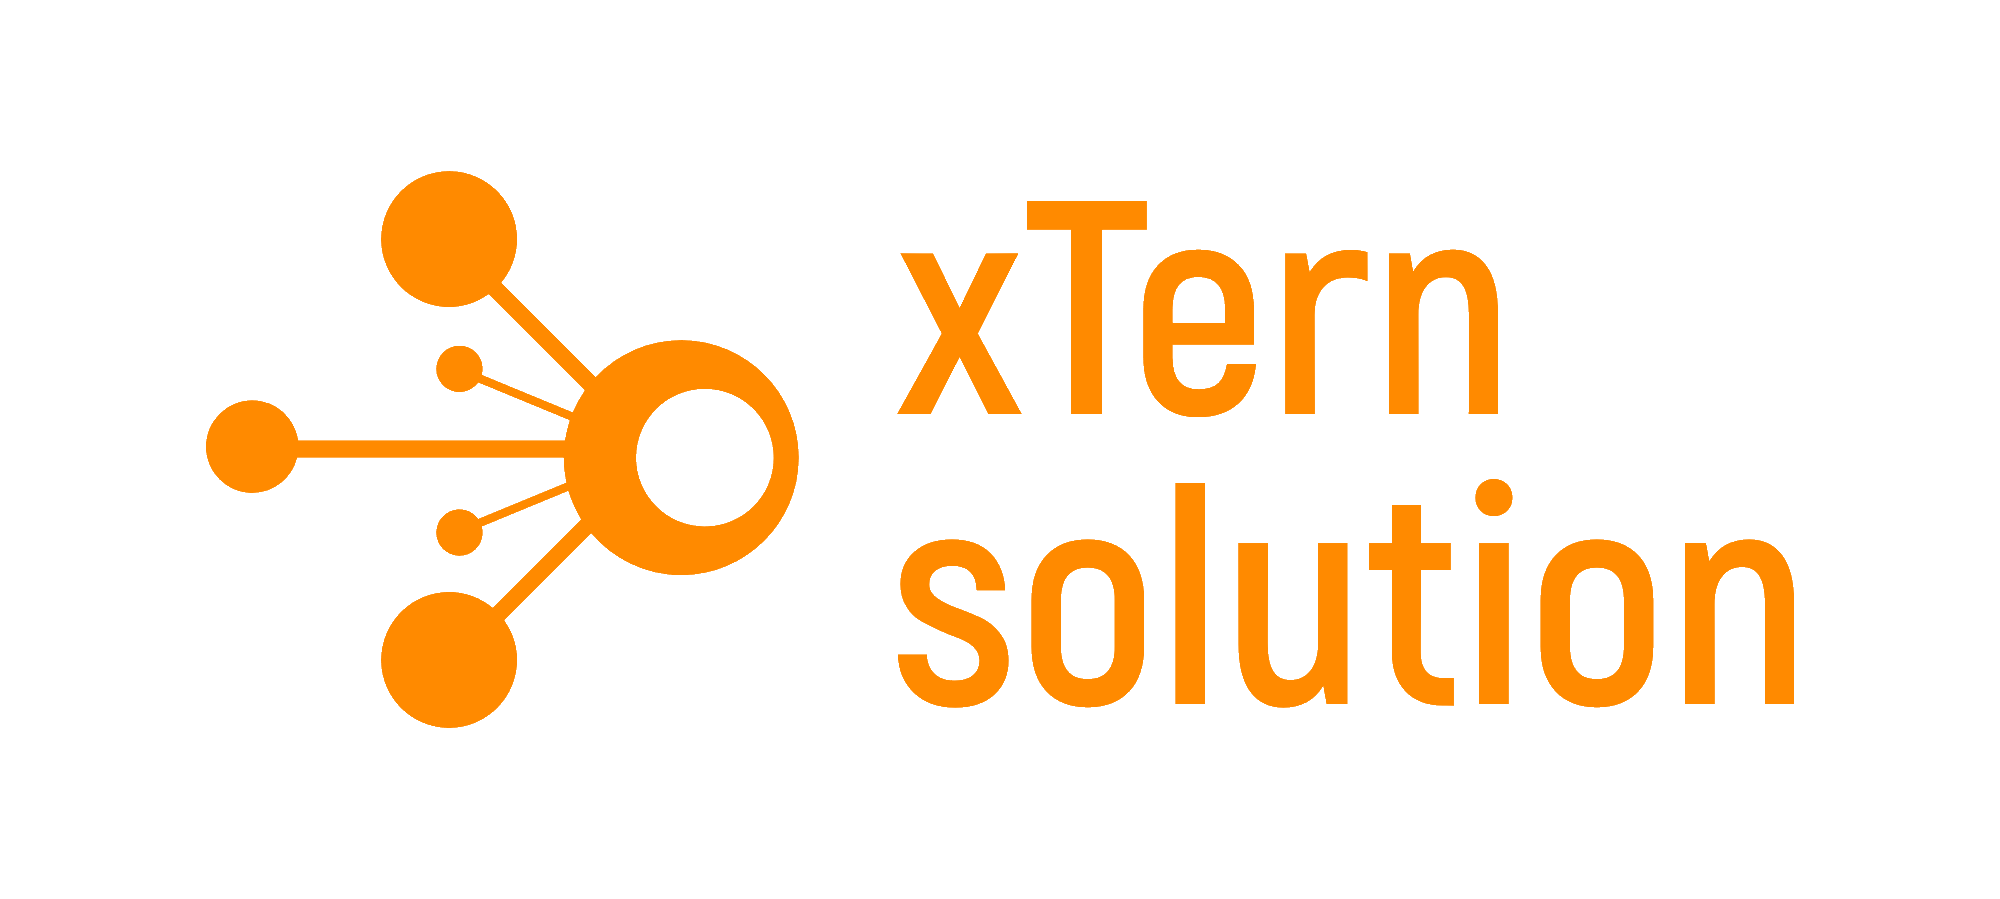 (c) Xtern-solution.de